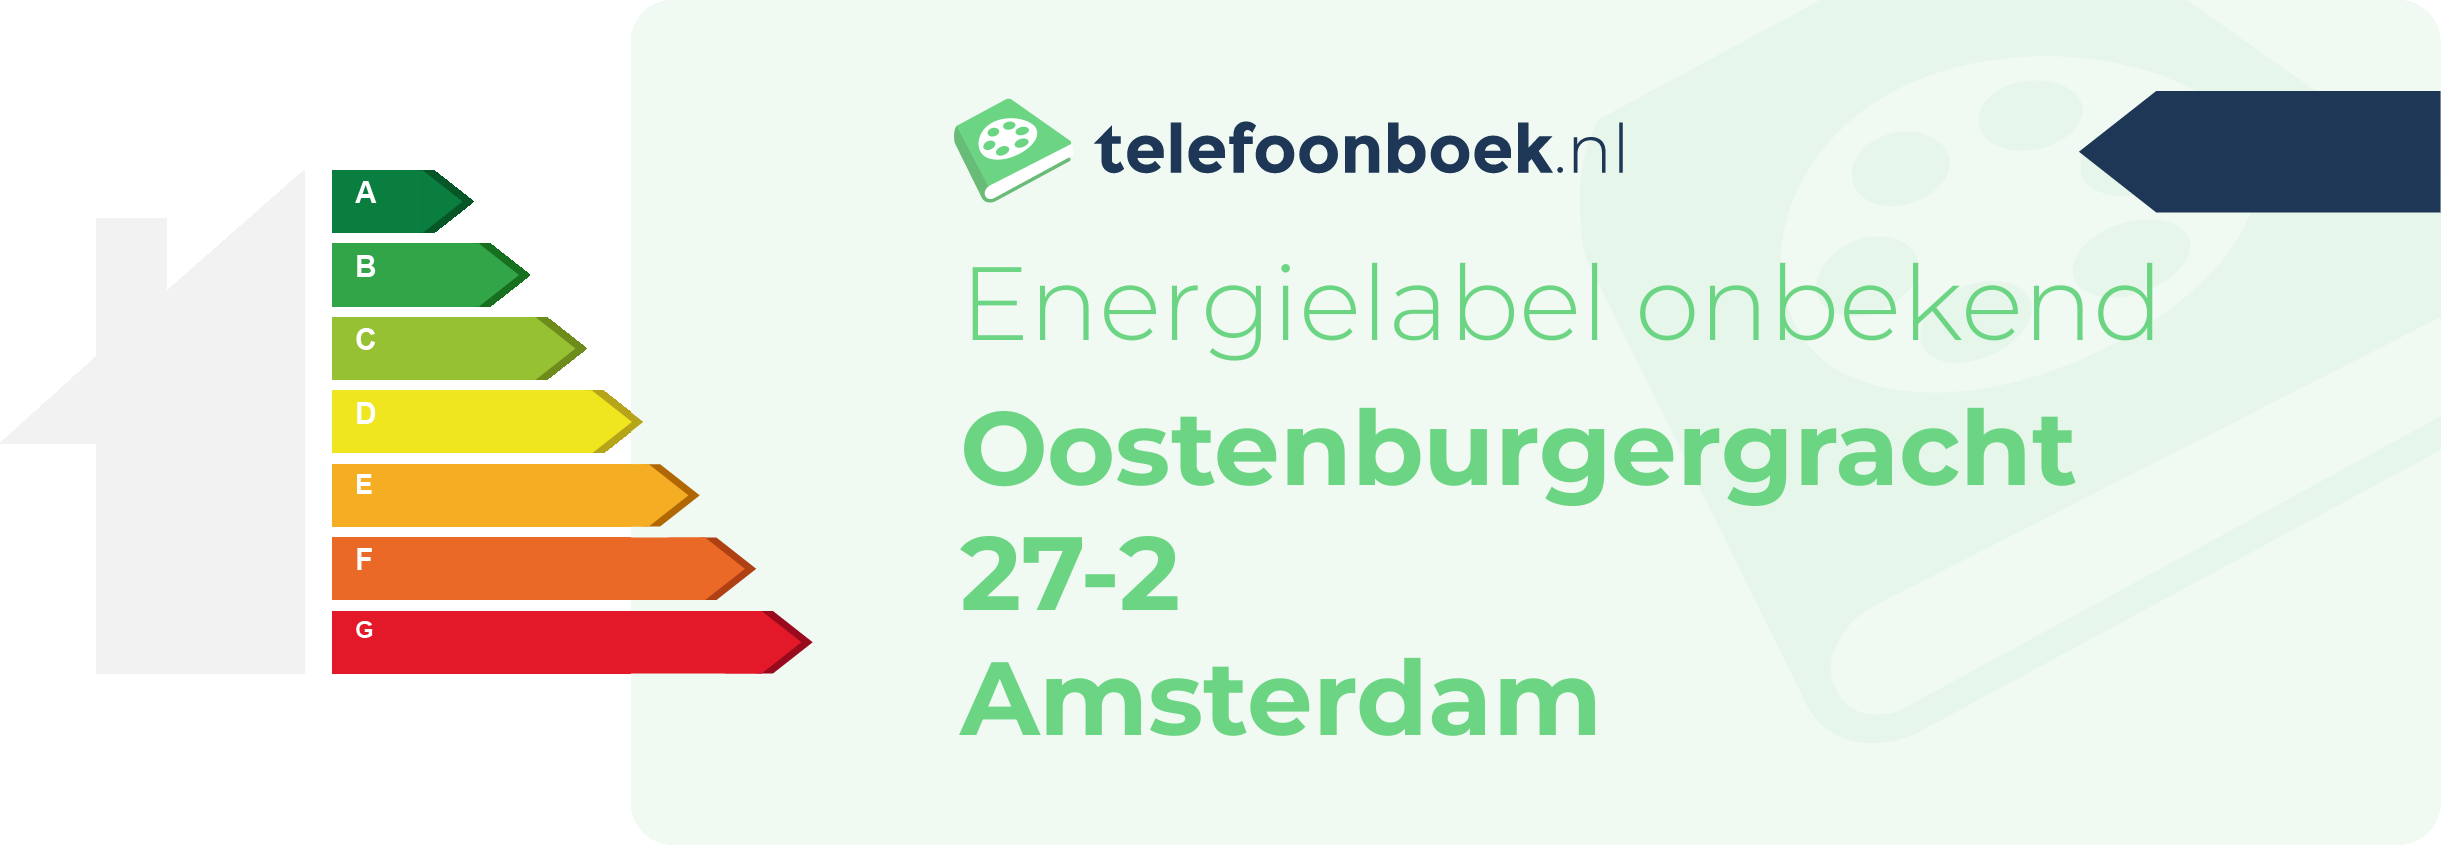 Energielabel Oostenburgergracht 27-2 Amsterdam